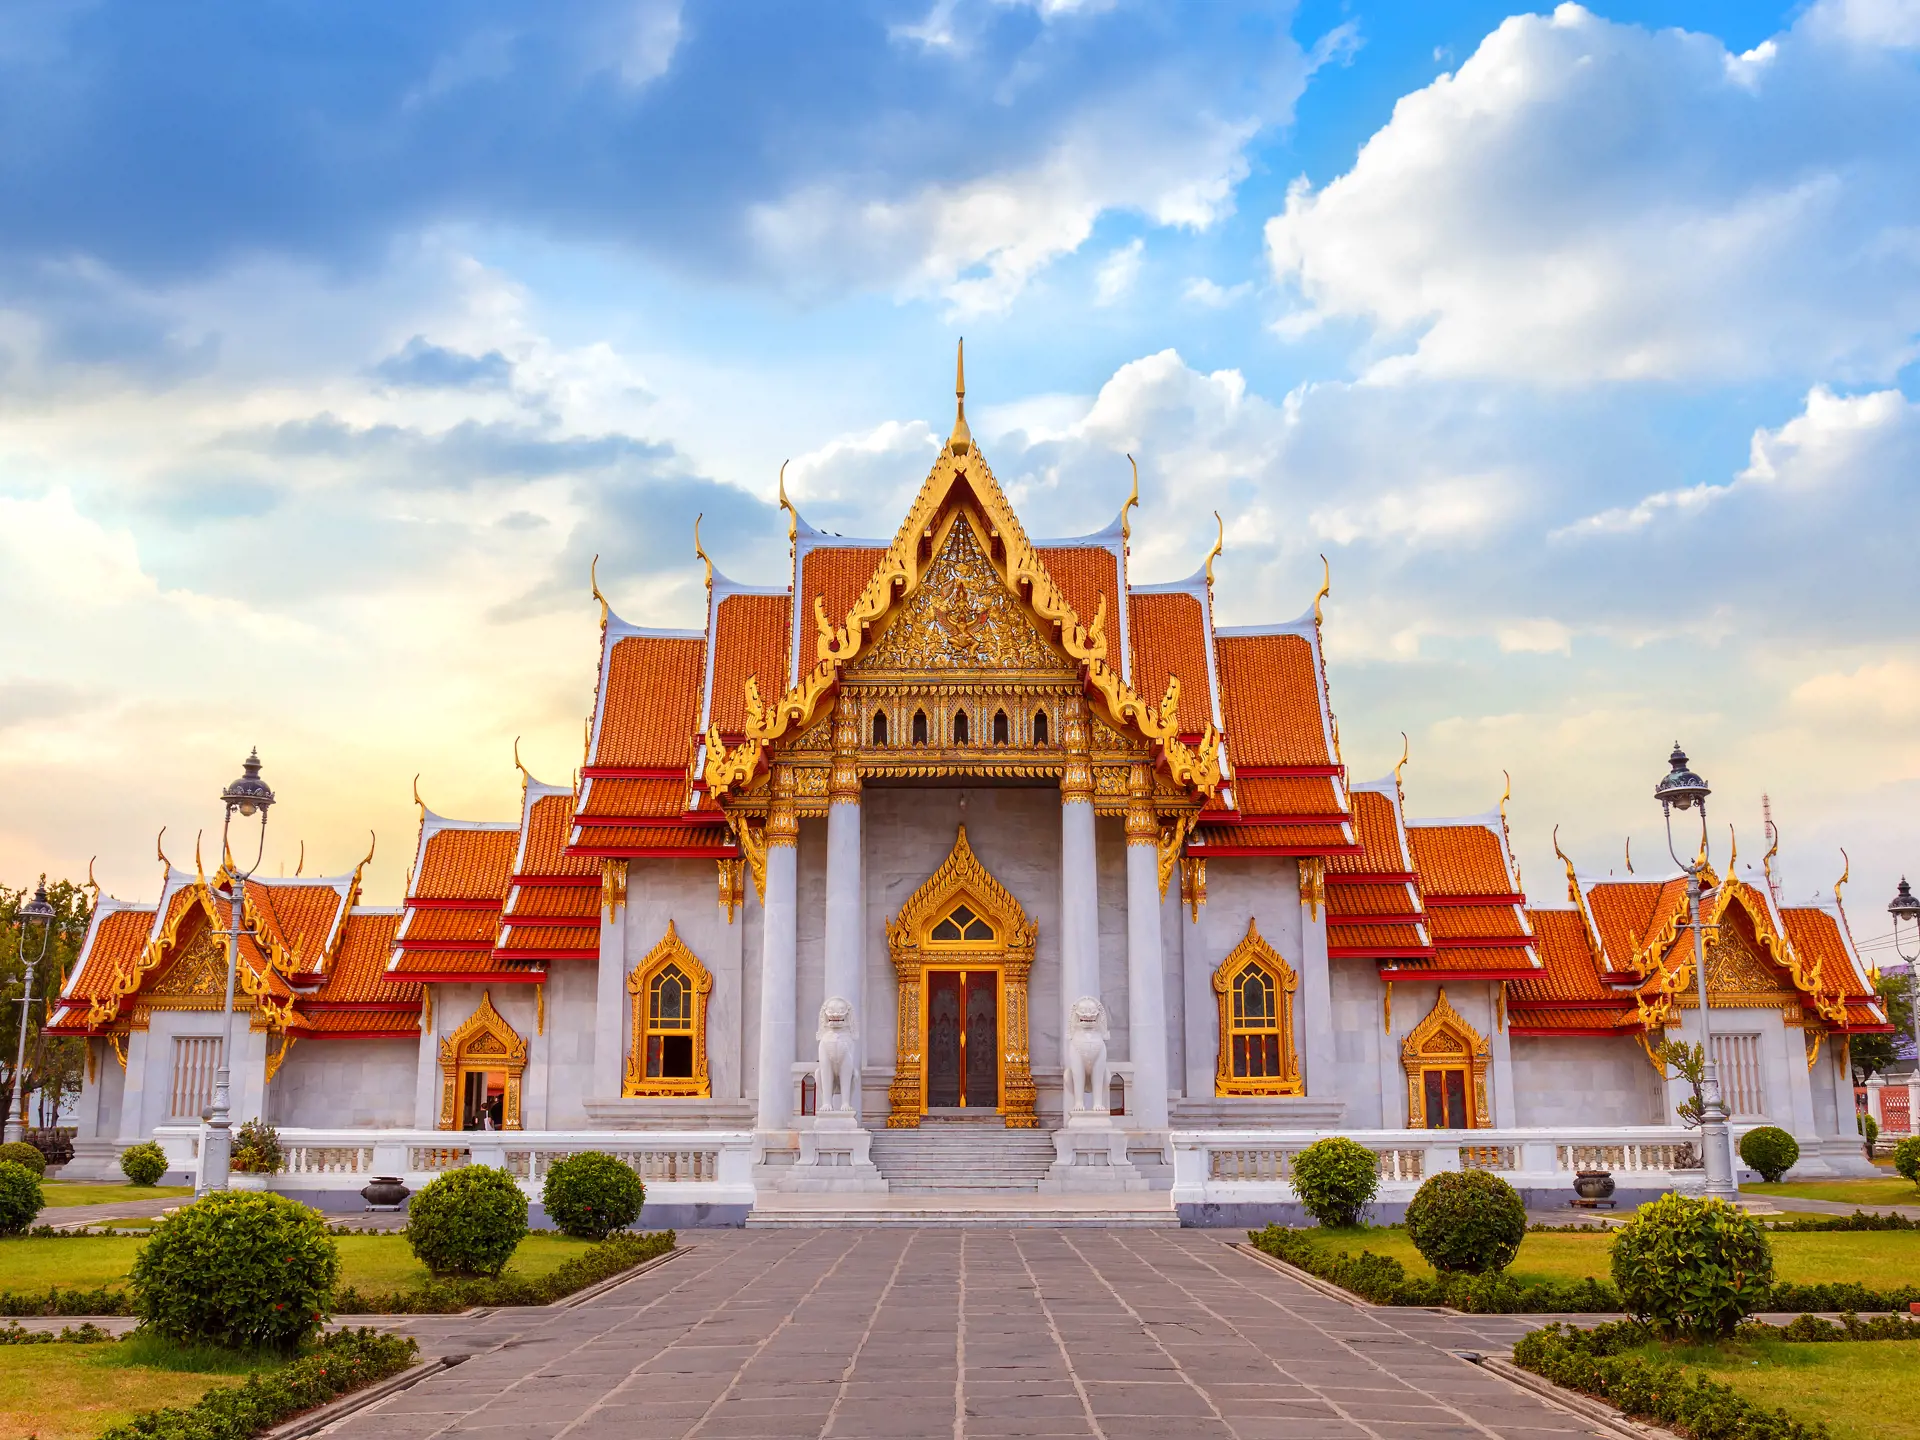 shutterstock_309619493 The Marble Temple, Wat Benchamabopit Dusitvanaram in Bangkok, Thailand.jpg